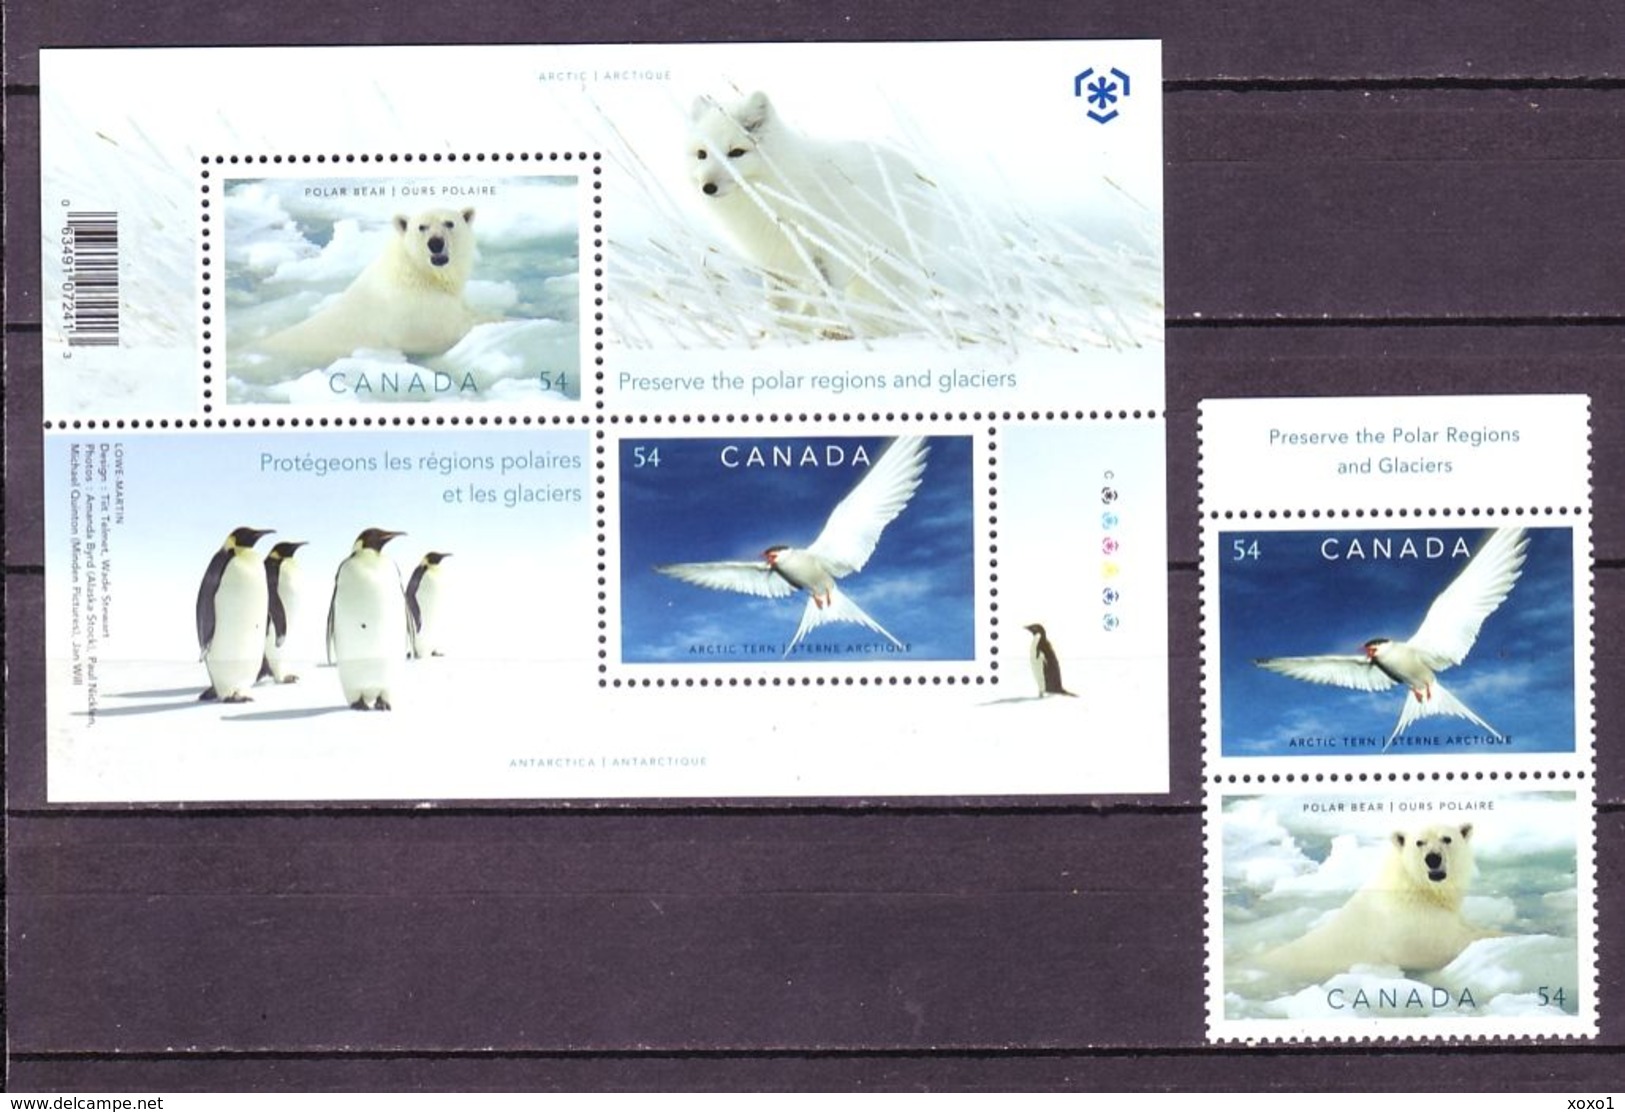 Canada 2009 MiNr. 2547 - 2548 (Block 113) Kanada Fauna BIRDS POLAR YEAR 2v+1bl MNH** 4.80 € - International Polar Year